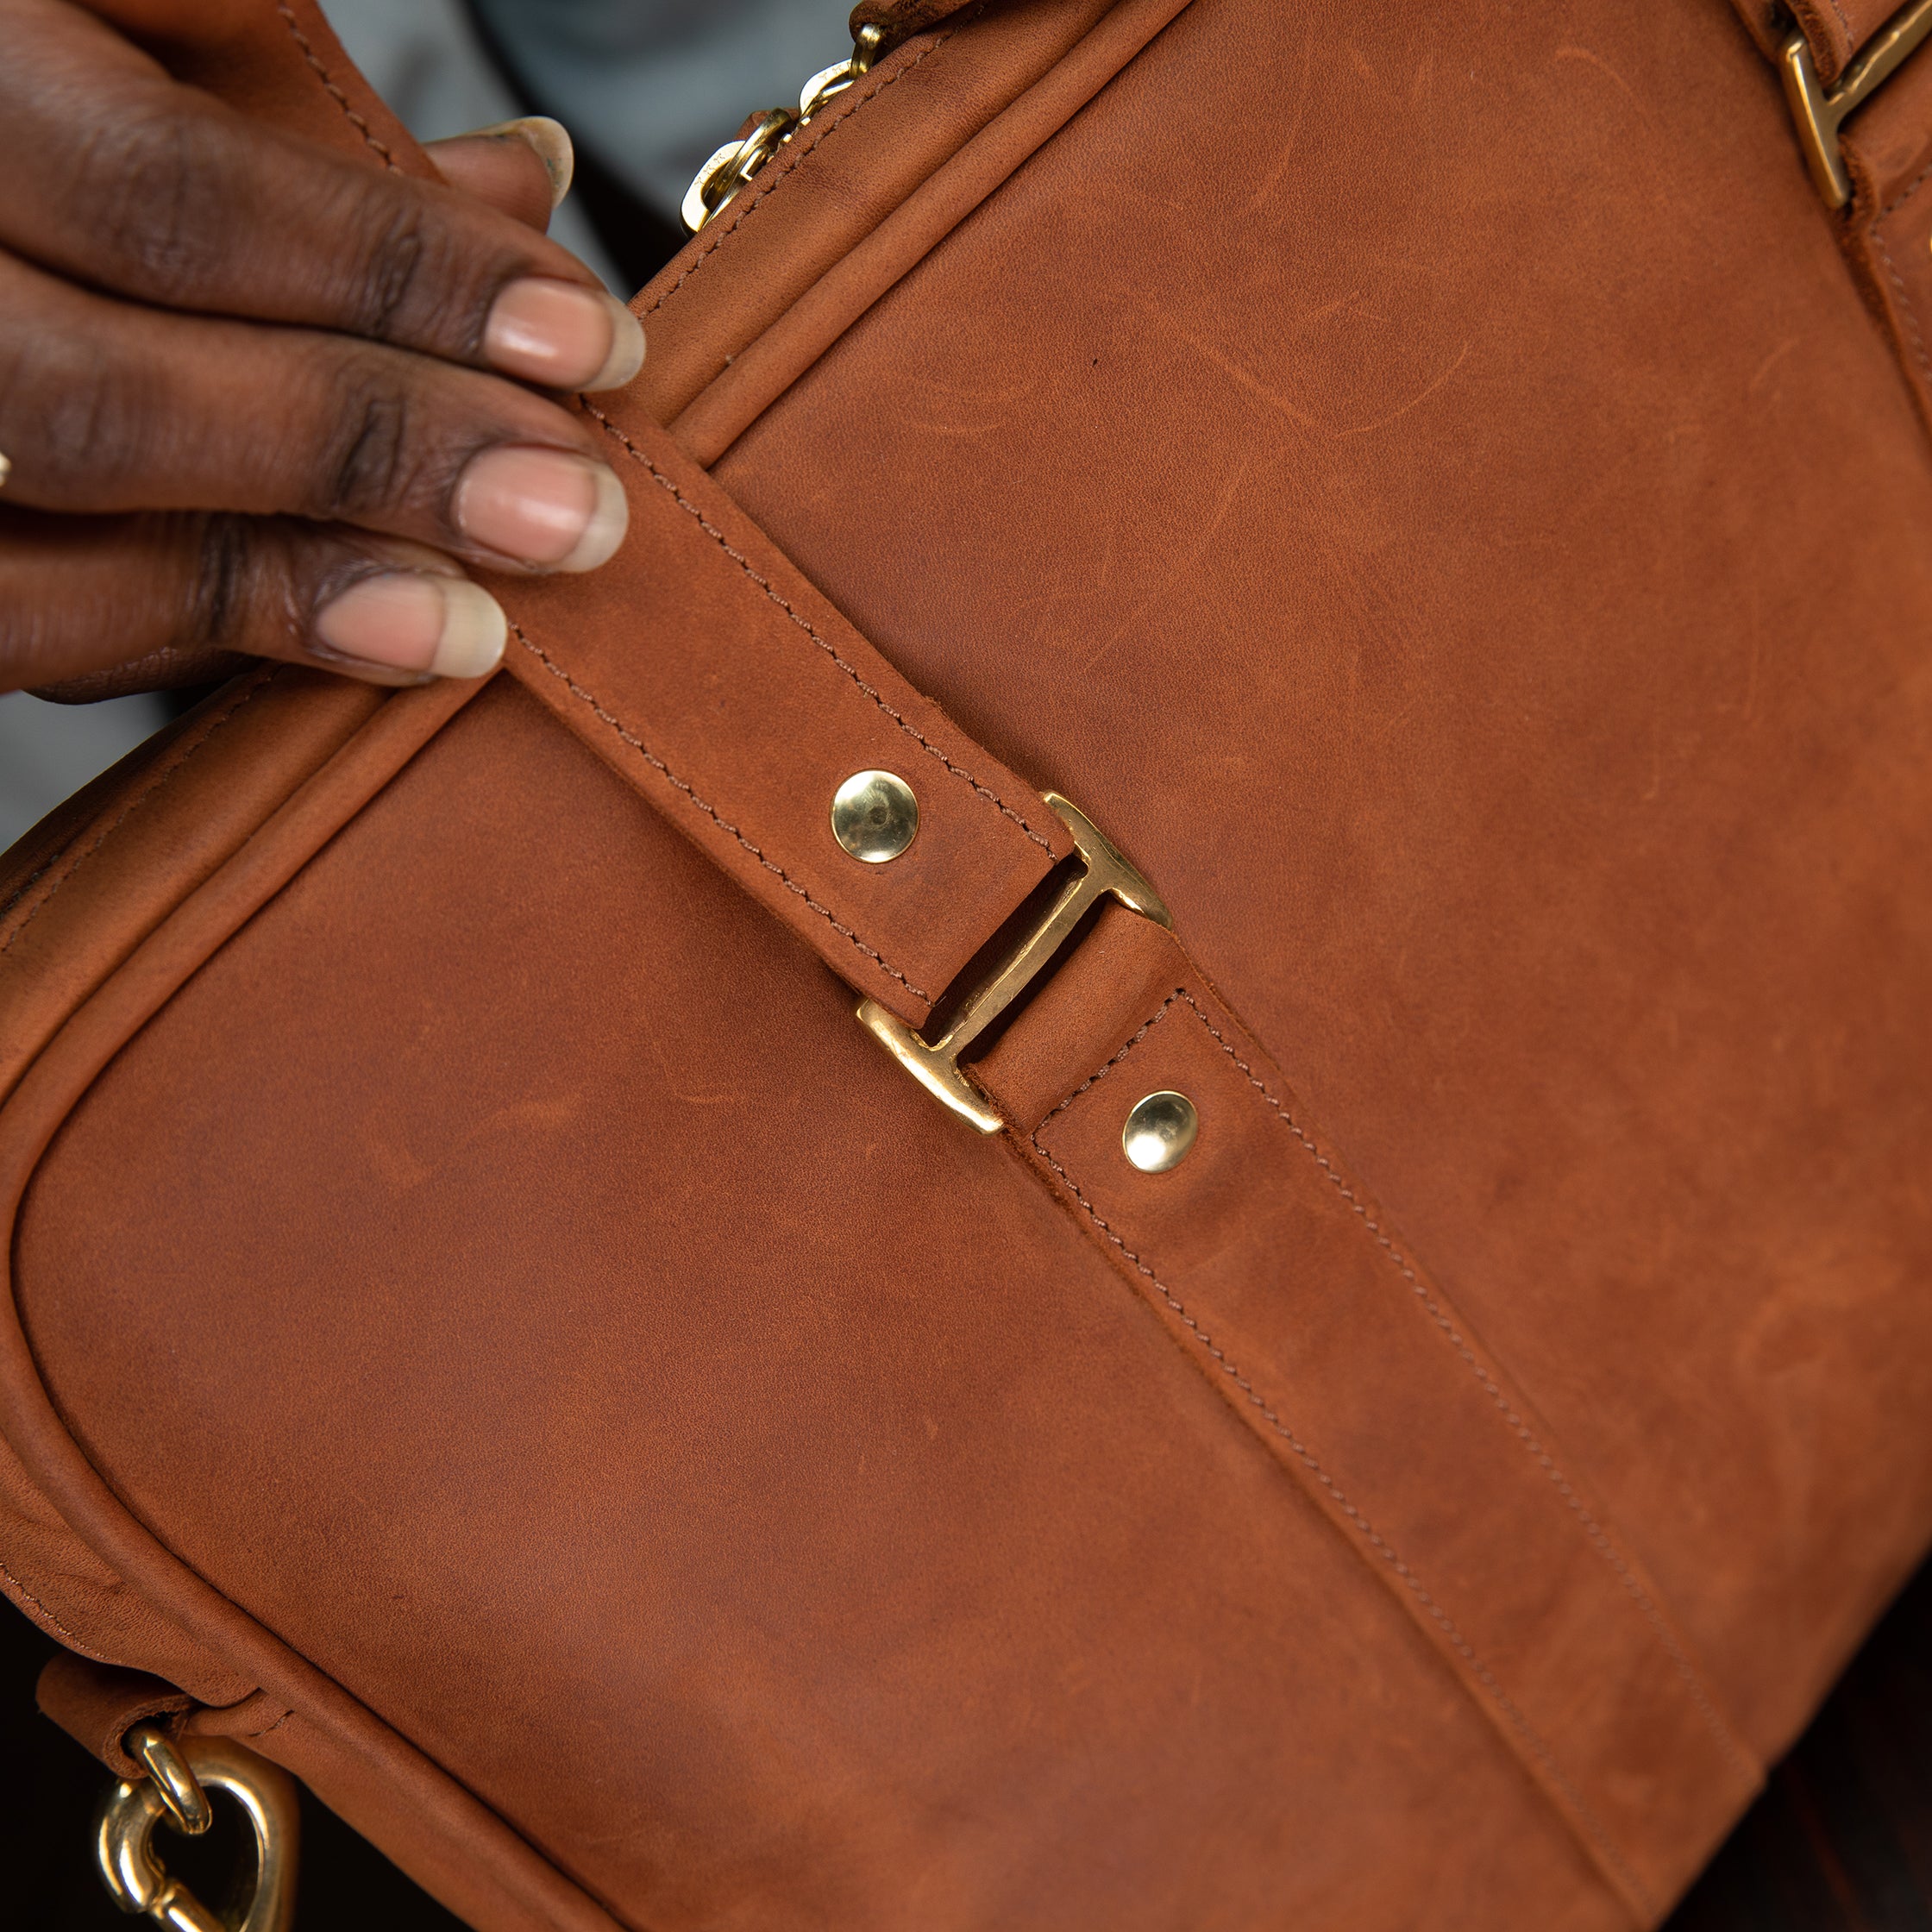 Pull-up Leather Pili Folio Bag - Sandstorm Kenya (Intl)